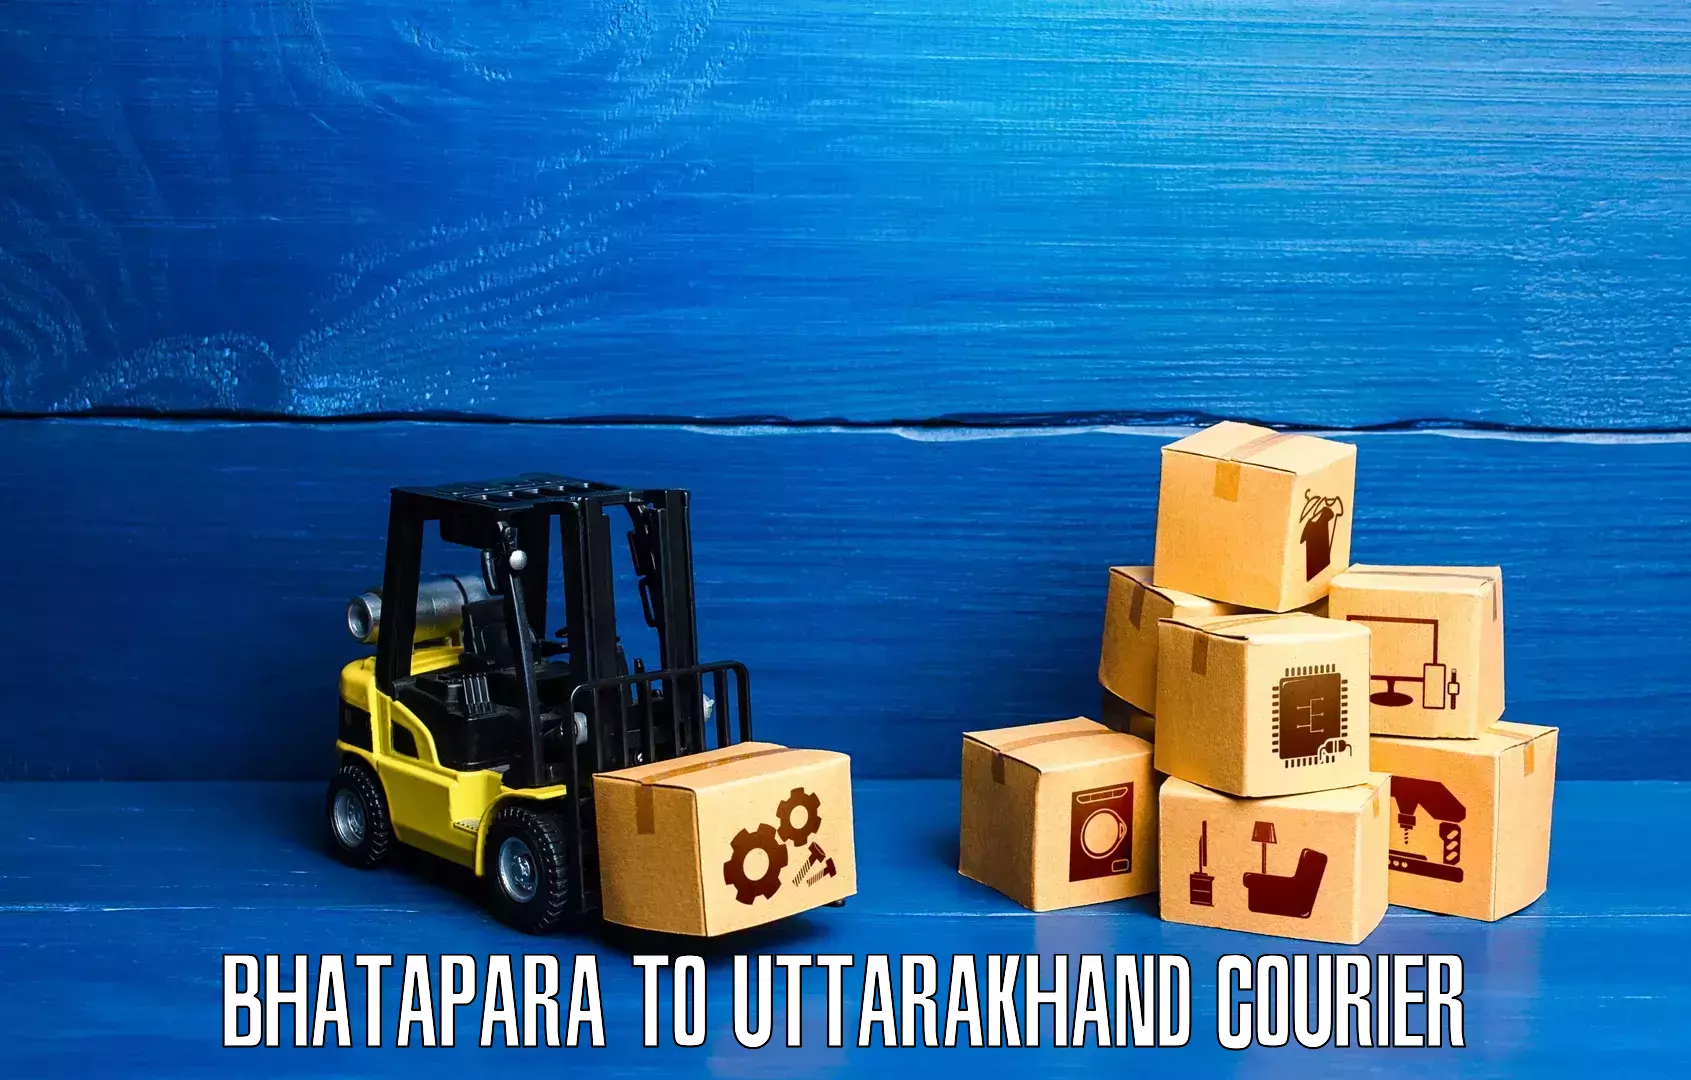 Customized shipping options Bhatapara to Paithani